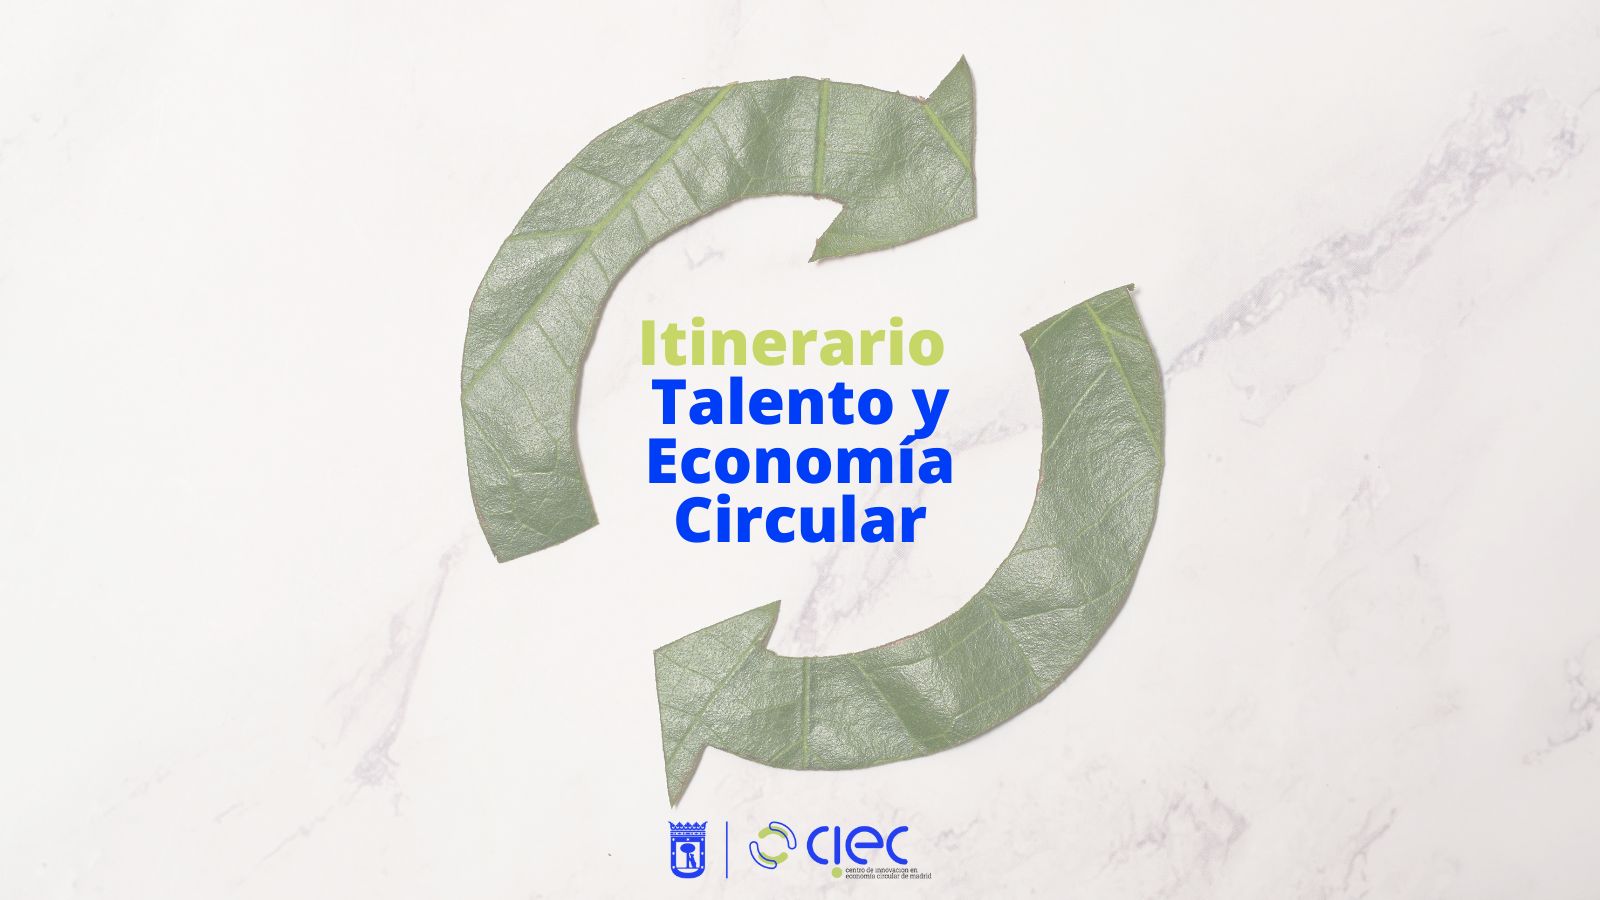 Itinerario Talento y Economía Circular, sesión 6: Modelos de negocio en economía circular